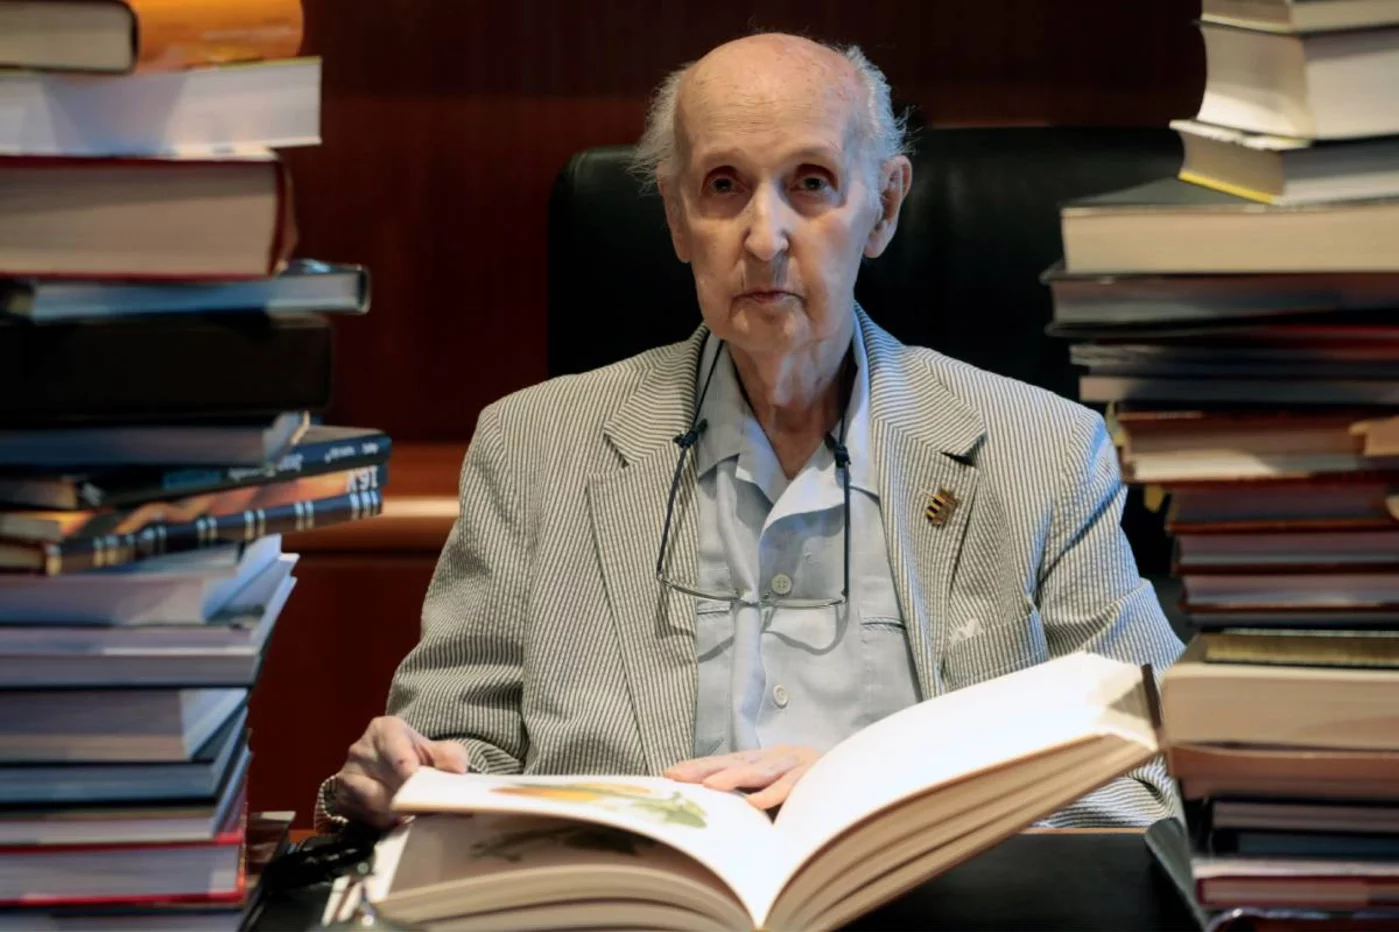 El presidente del Consell Valencià de Cultura (CVC), el científico Santiago Grisolía, ha fallecido este jueves a los 99 años de edad en el Hospital Clínico de València. Foto: EFE/ KAI FORSTERLING